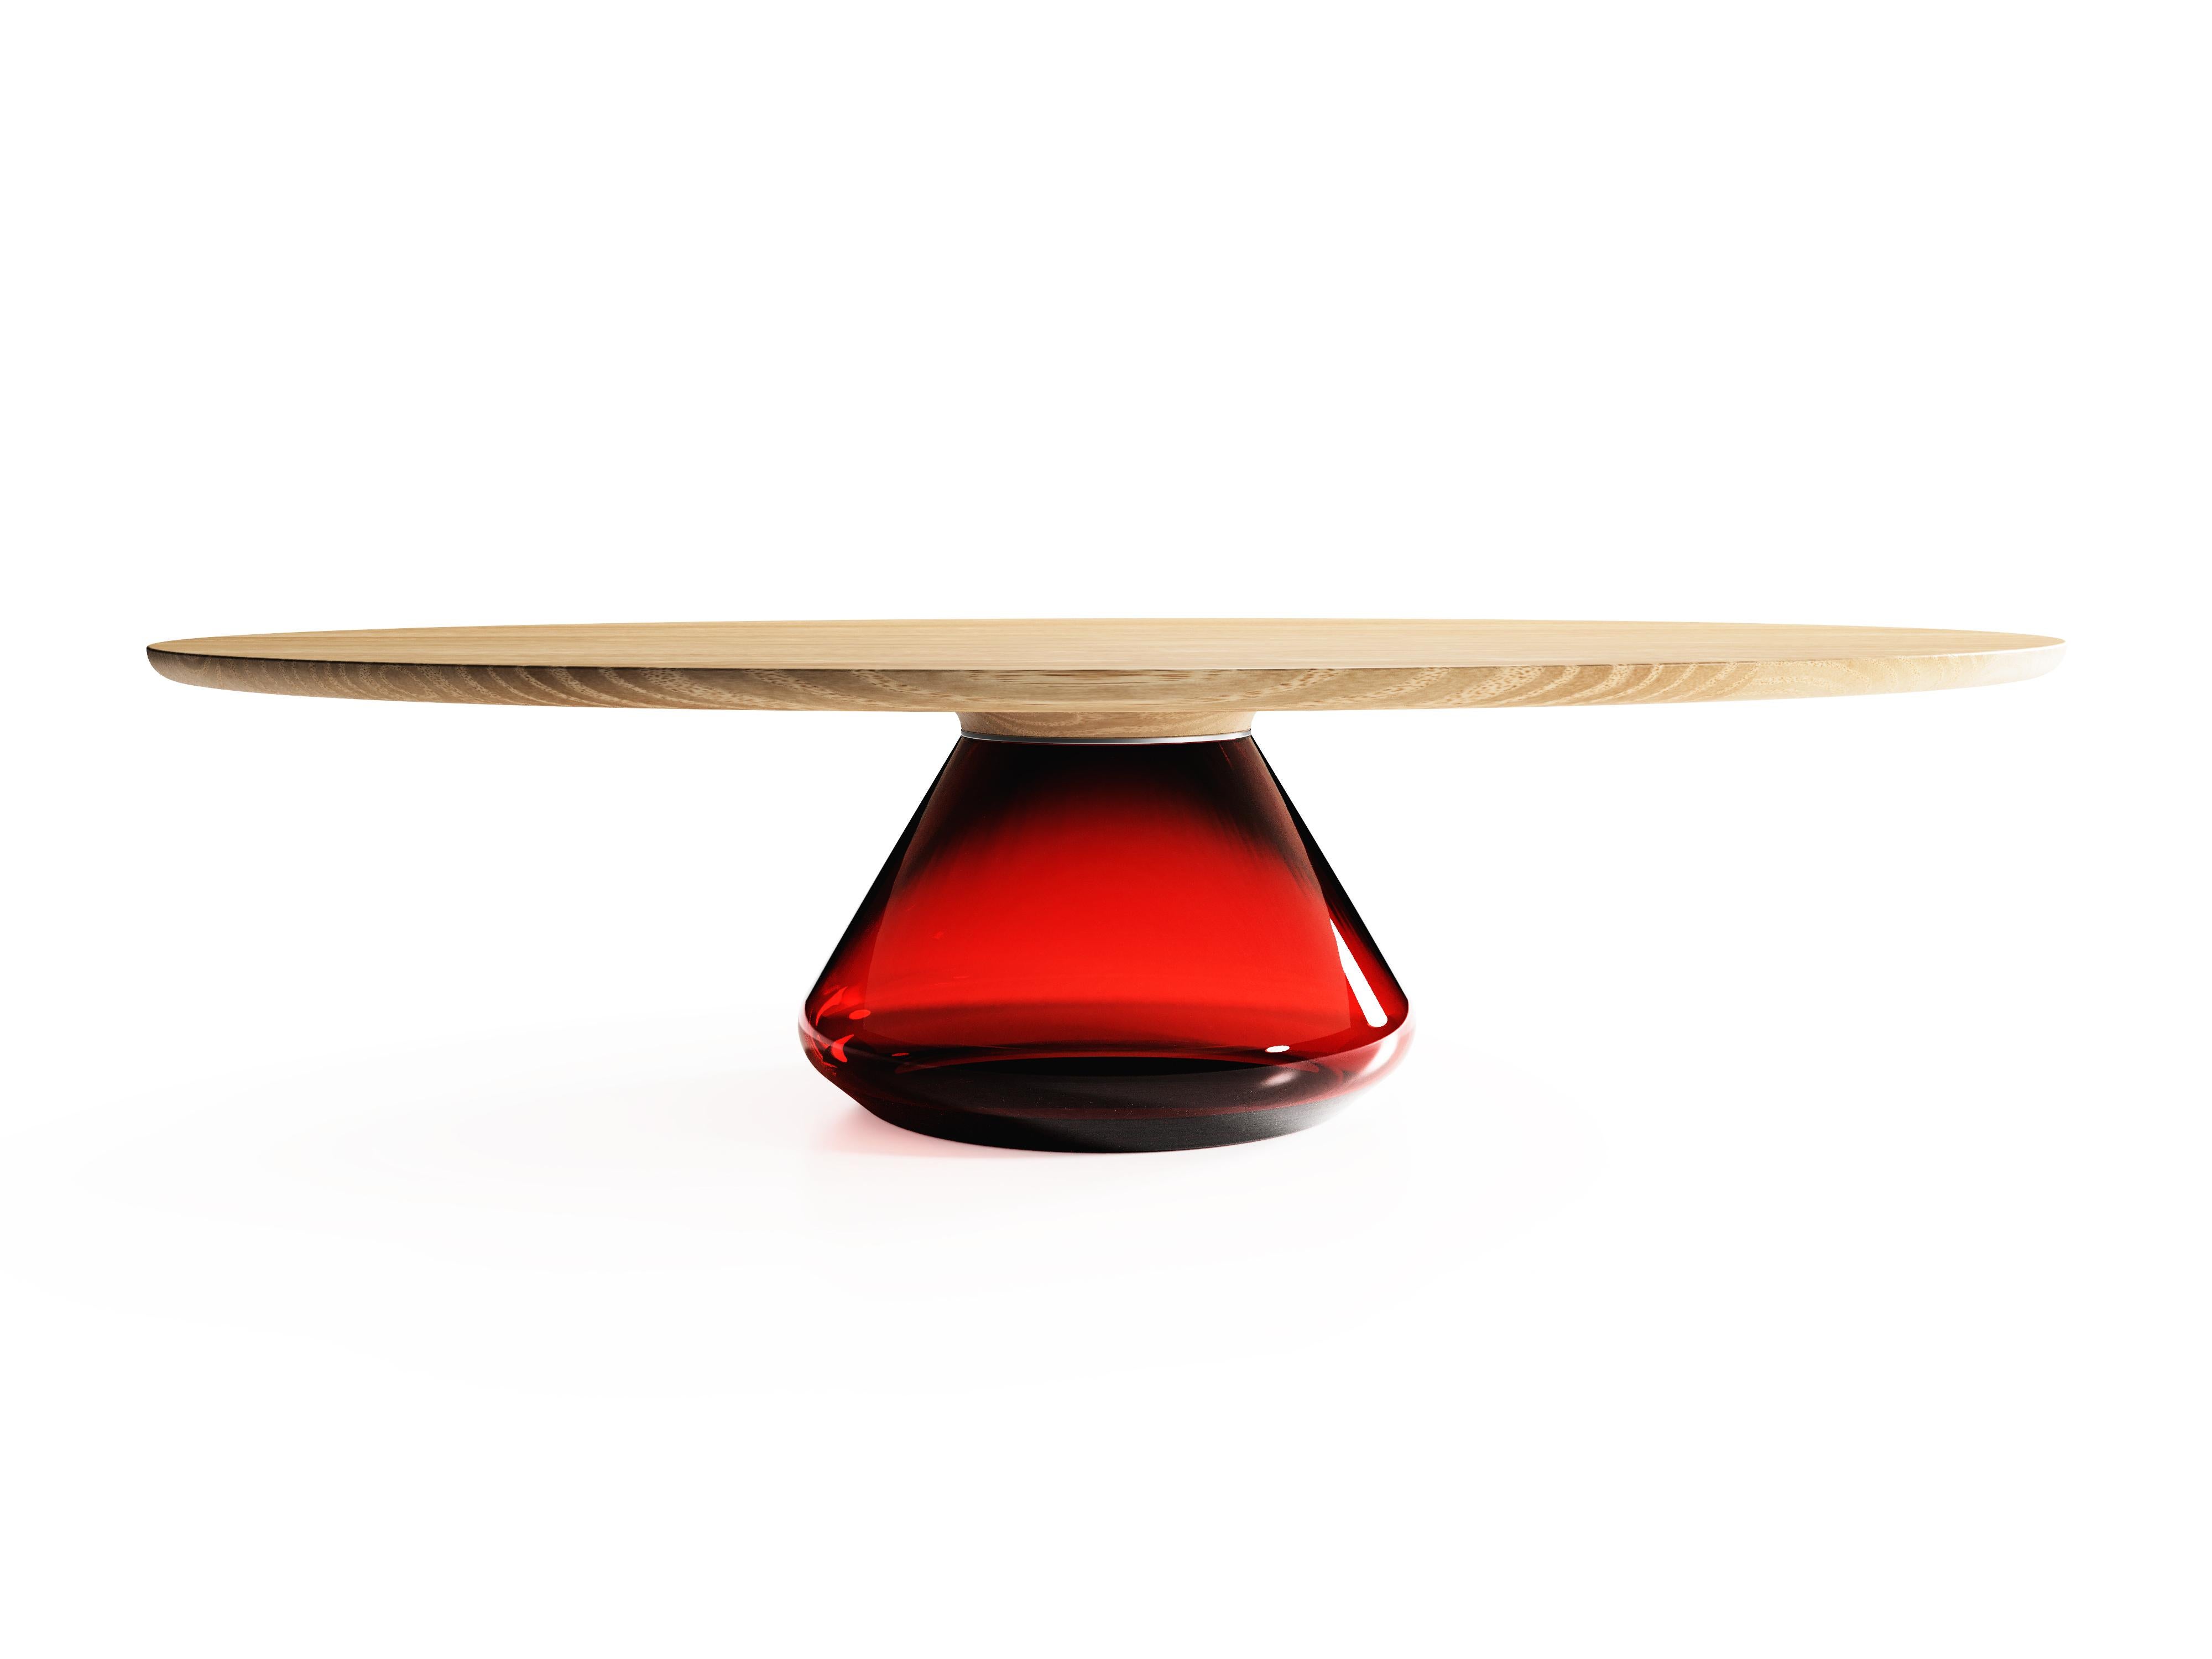 Glass Ruby Eclipse i, Limited Edition Coffee Table by Grzegorz Majka